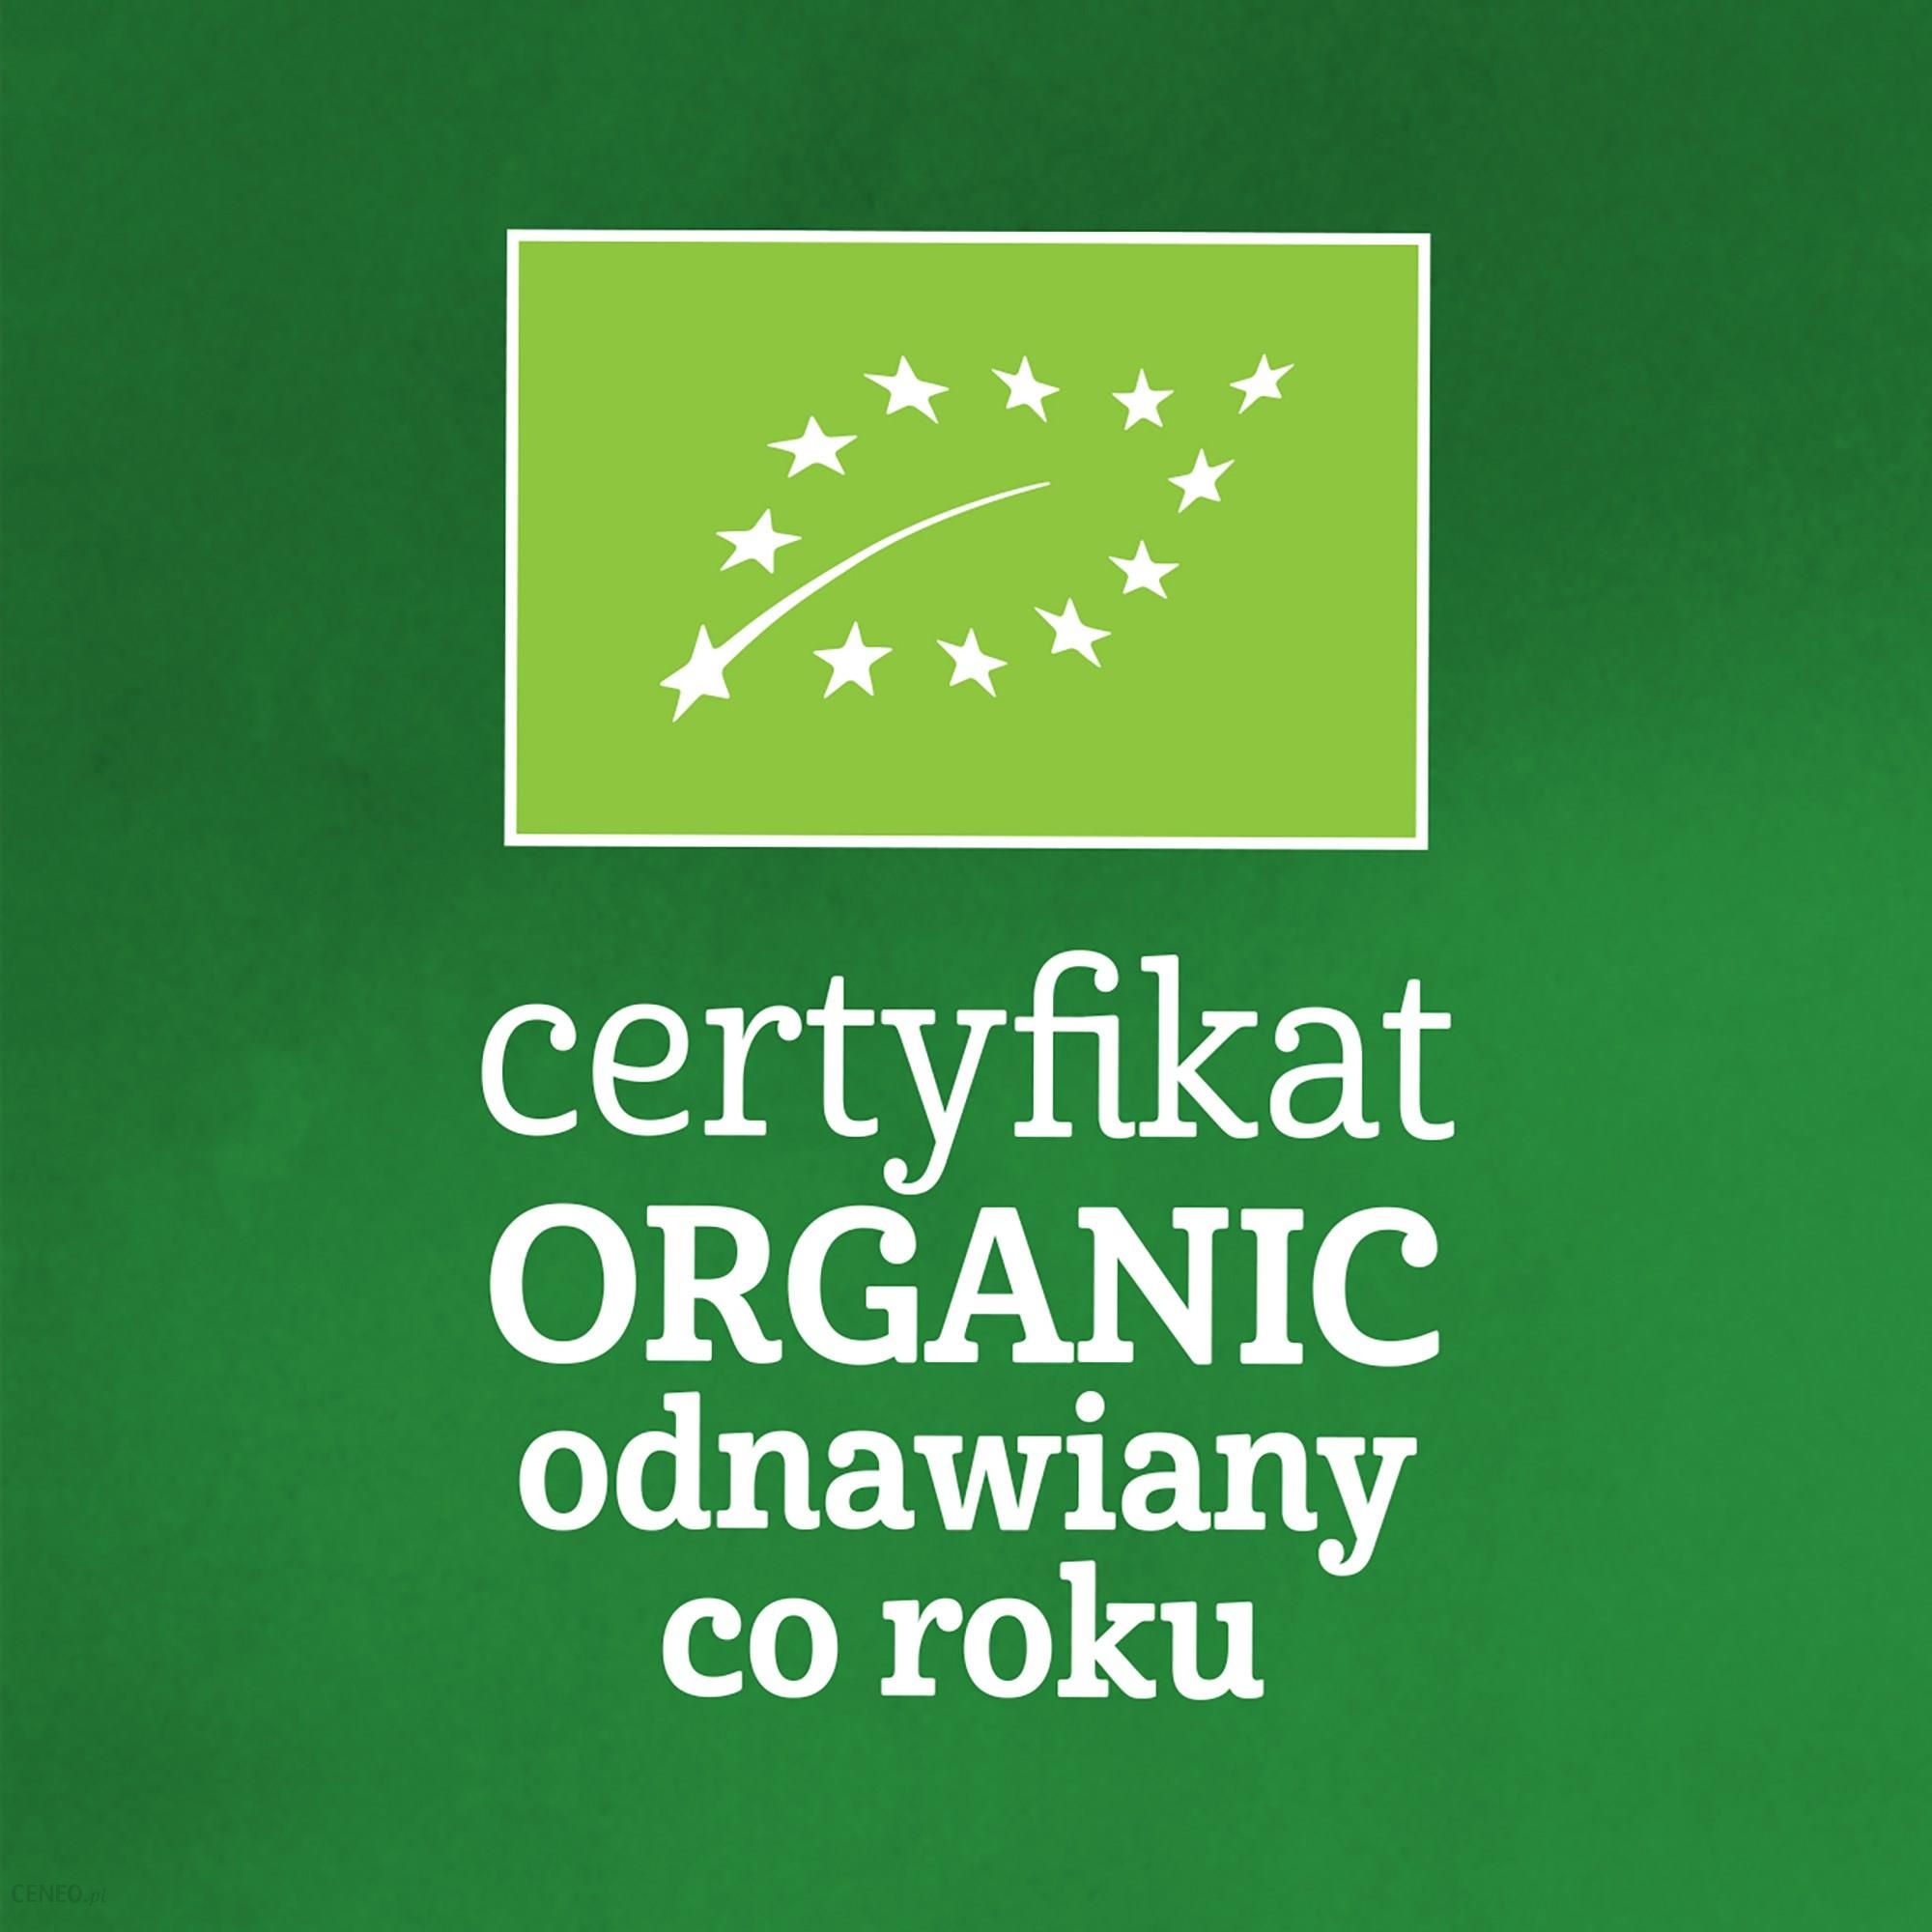 Gerber Organic Deserek 100% Wegański Z Musem Kokosowym Mango Kiwi Po 6 Miesiącu 360g